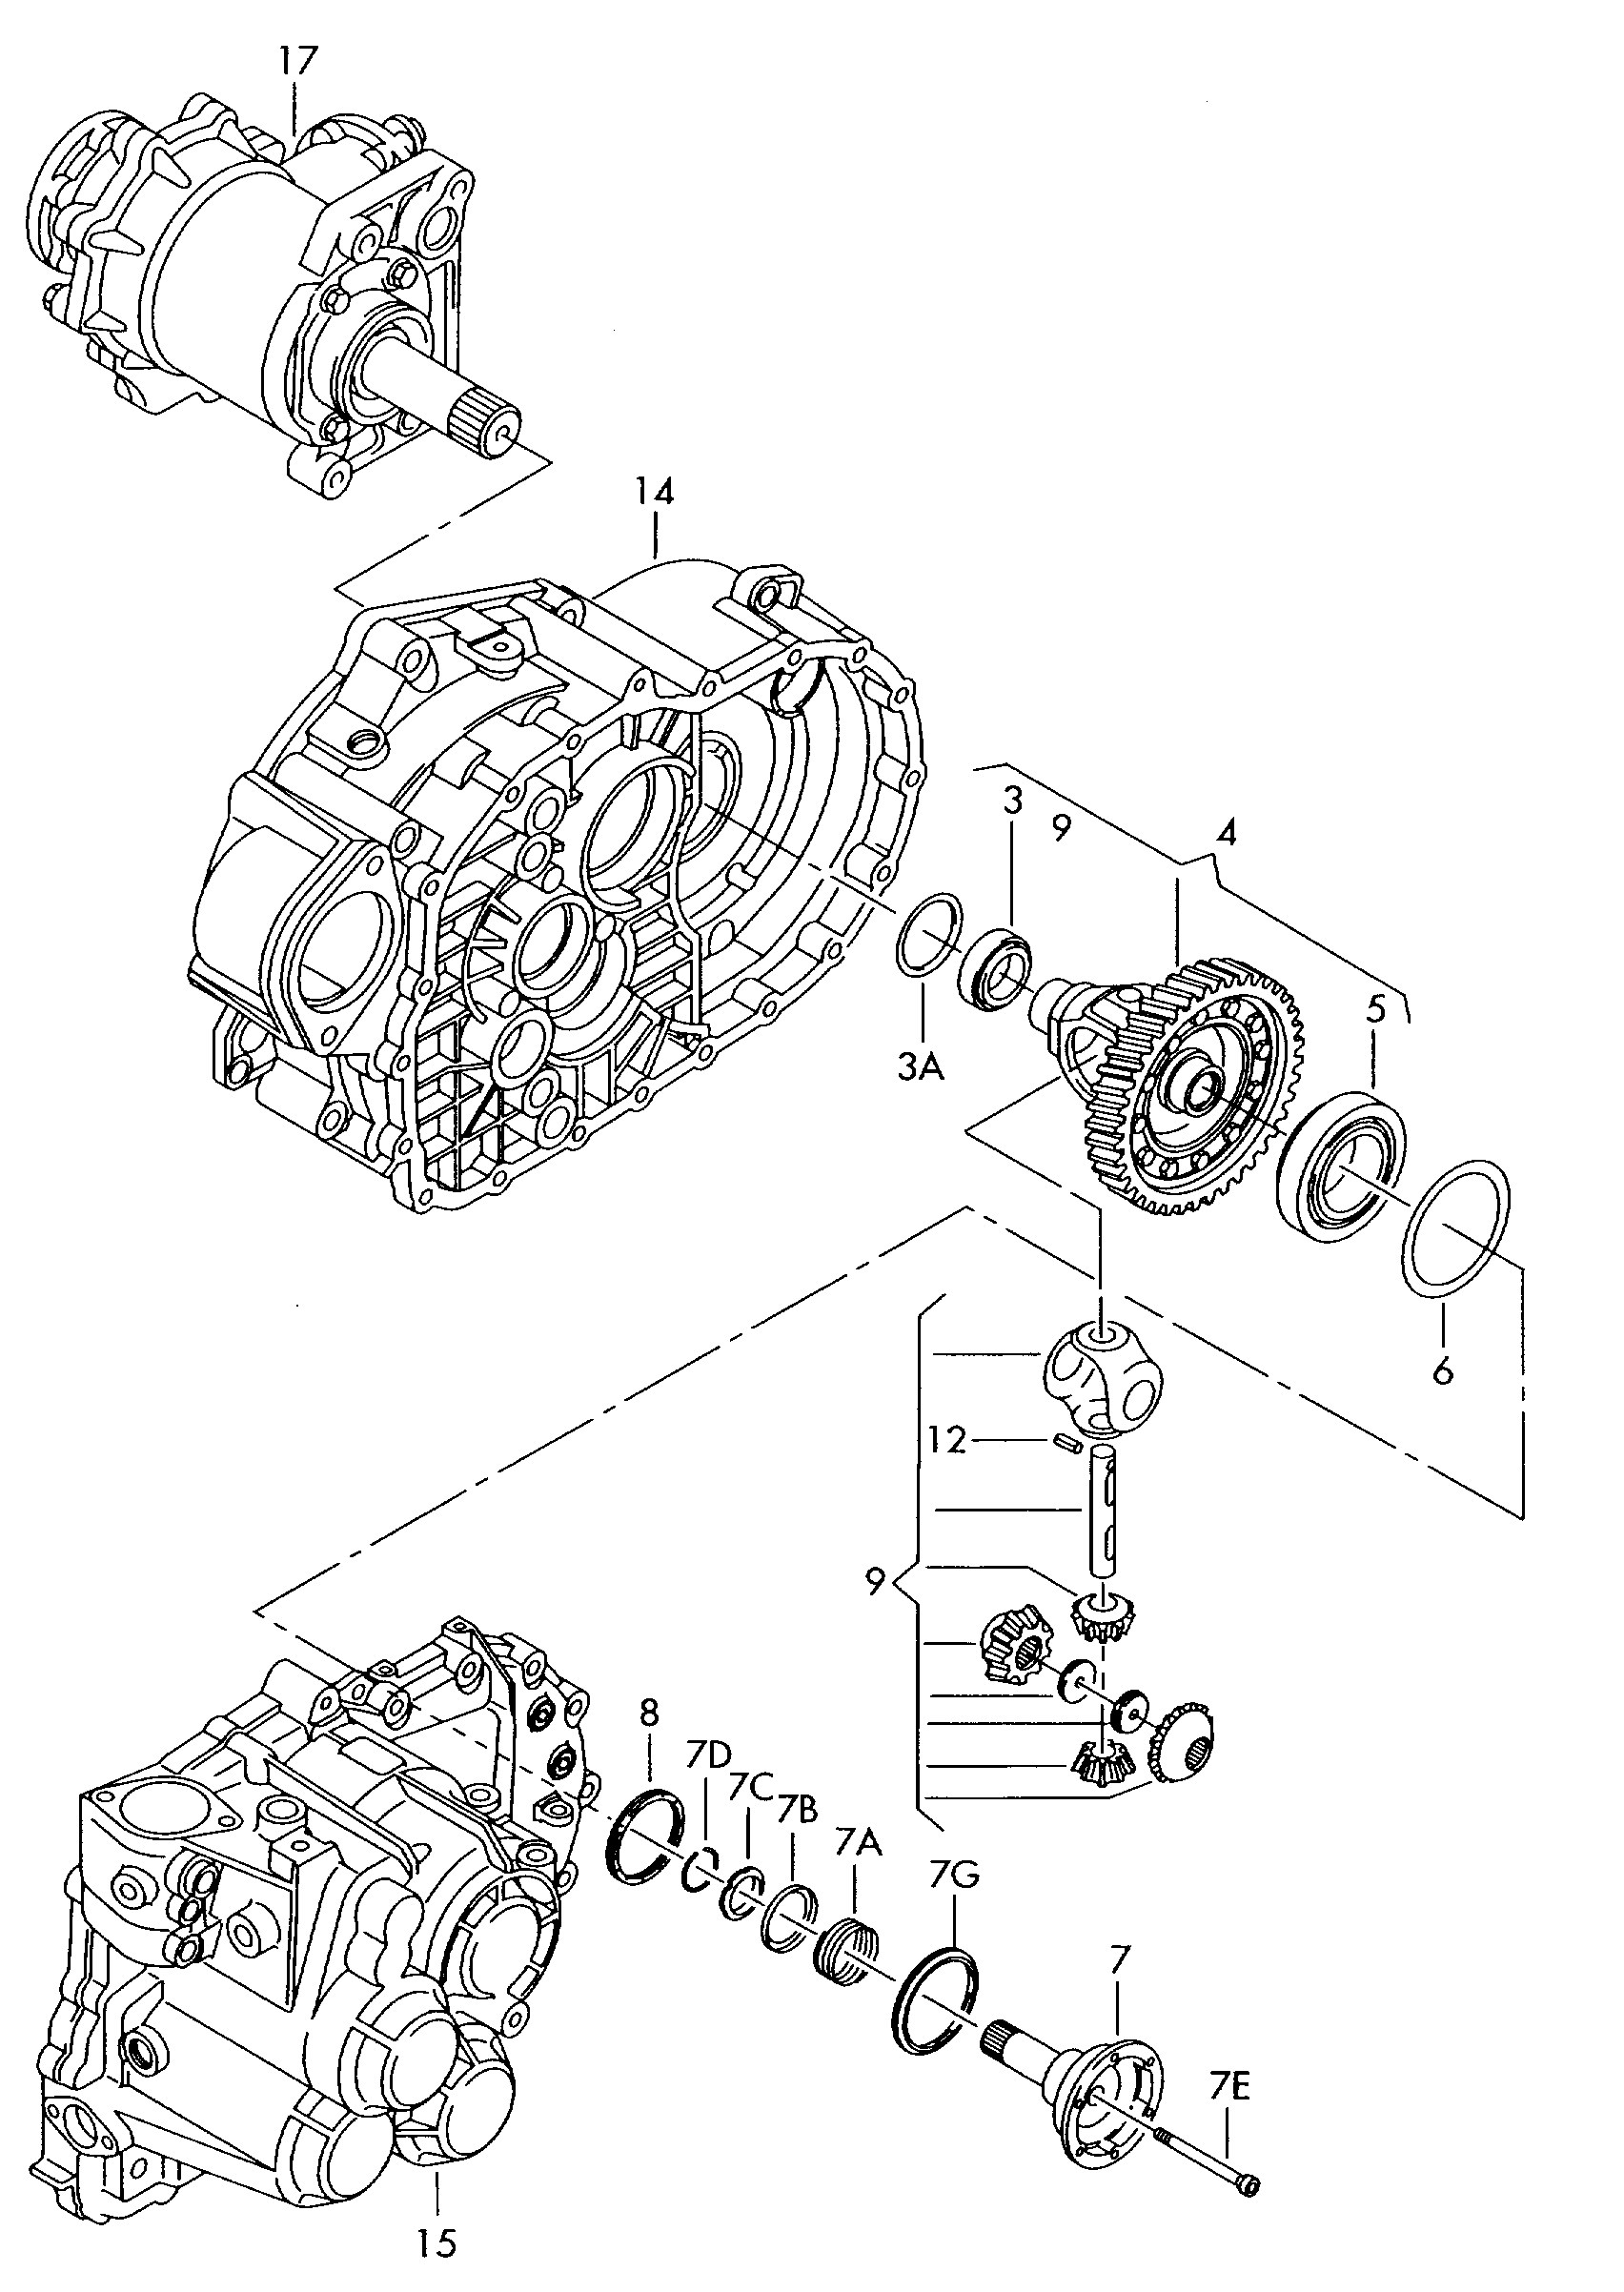 Differentieelaangedreven tandwiel6-versnellings schakelbakvoor 4-wielaandrijving  - Sharan/syncro/4Motion - sha